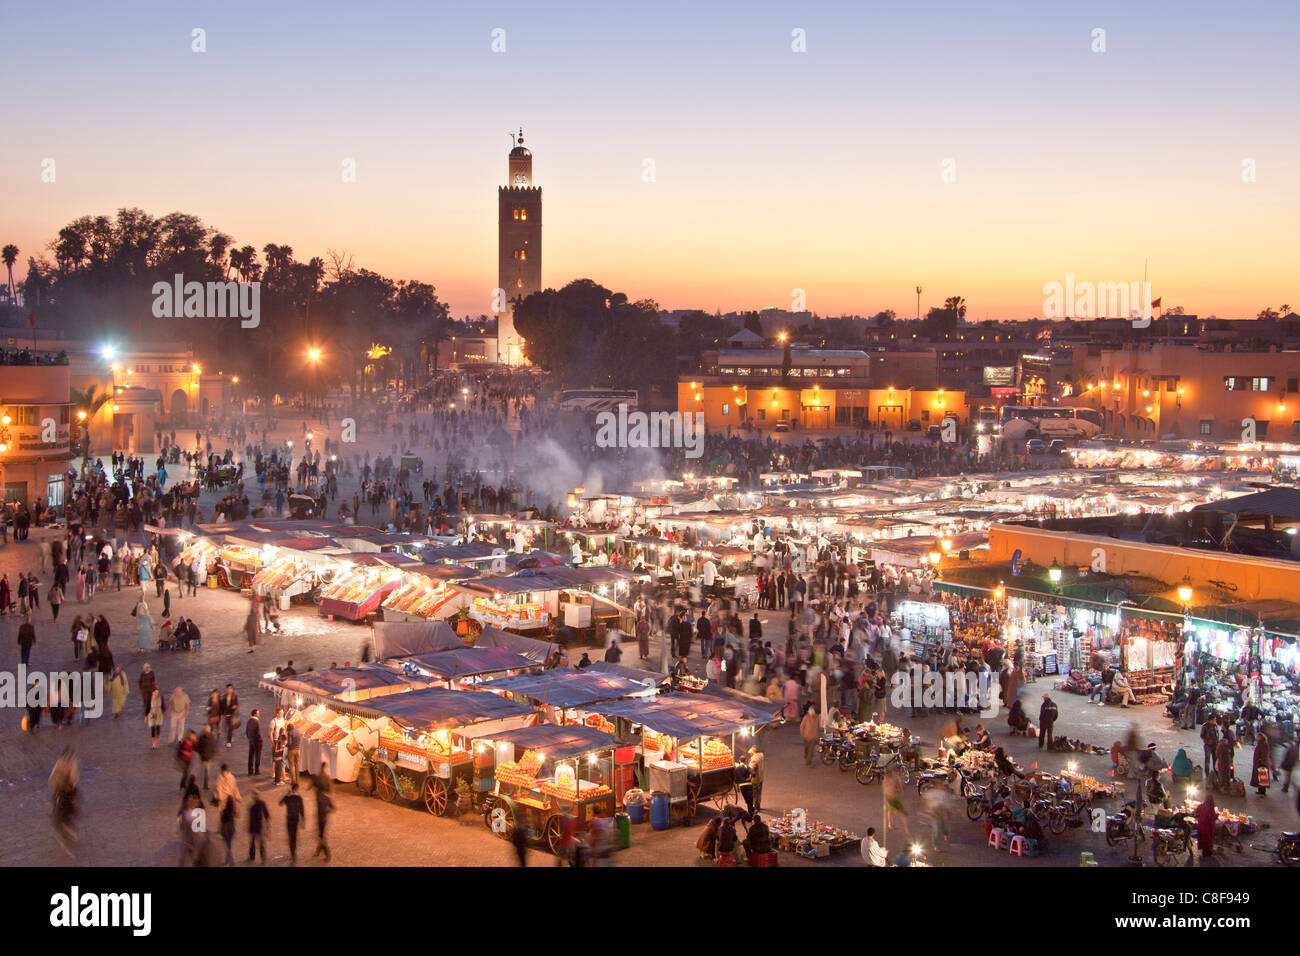 Marruecos, Norte de África, África Marrakech, Medina, negocios, comercio, tienda, Djemaa el Fna, lugar Koutobia, torre, rook, en vísperas Foto de stock